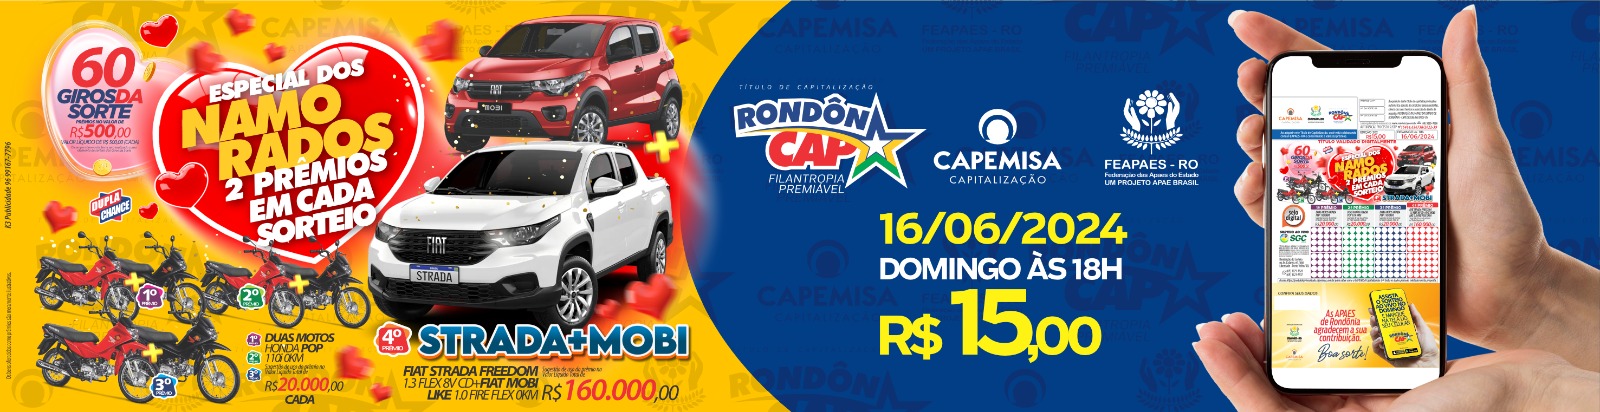 RondônCap sorteou nesse domingo dia 09 um Ford Ranger com uma Moto Bros e mais 50 mil reais em dinheiro - News Rondônia